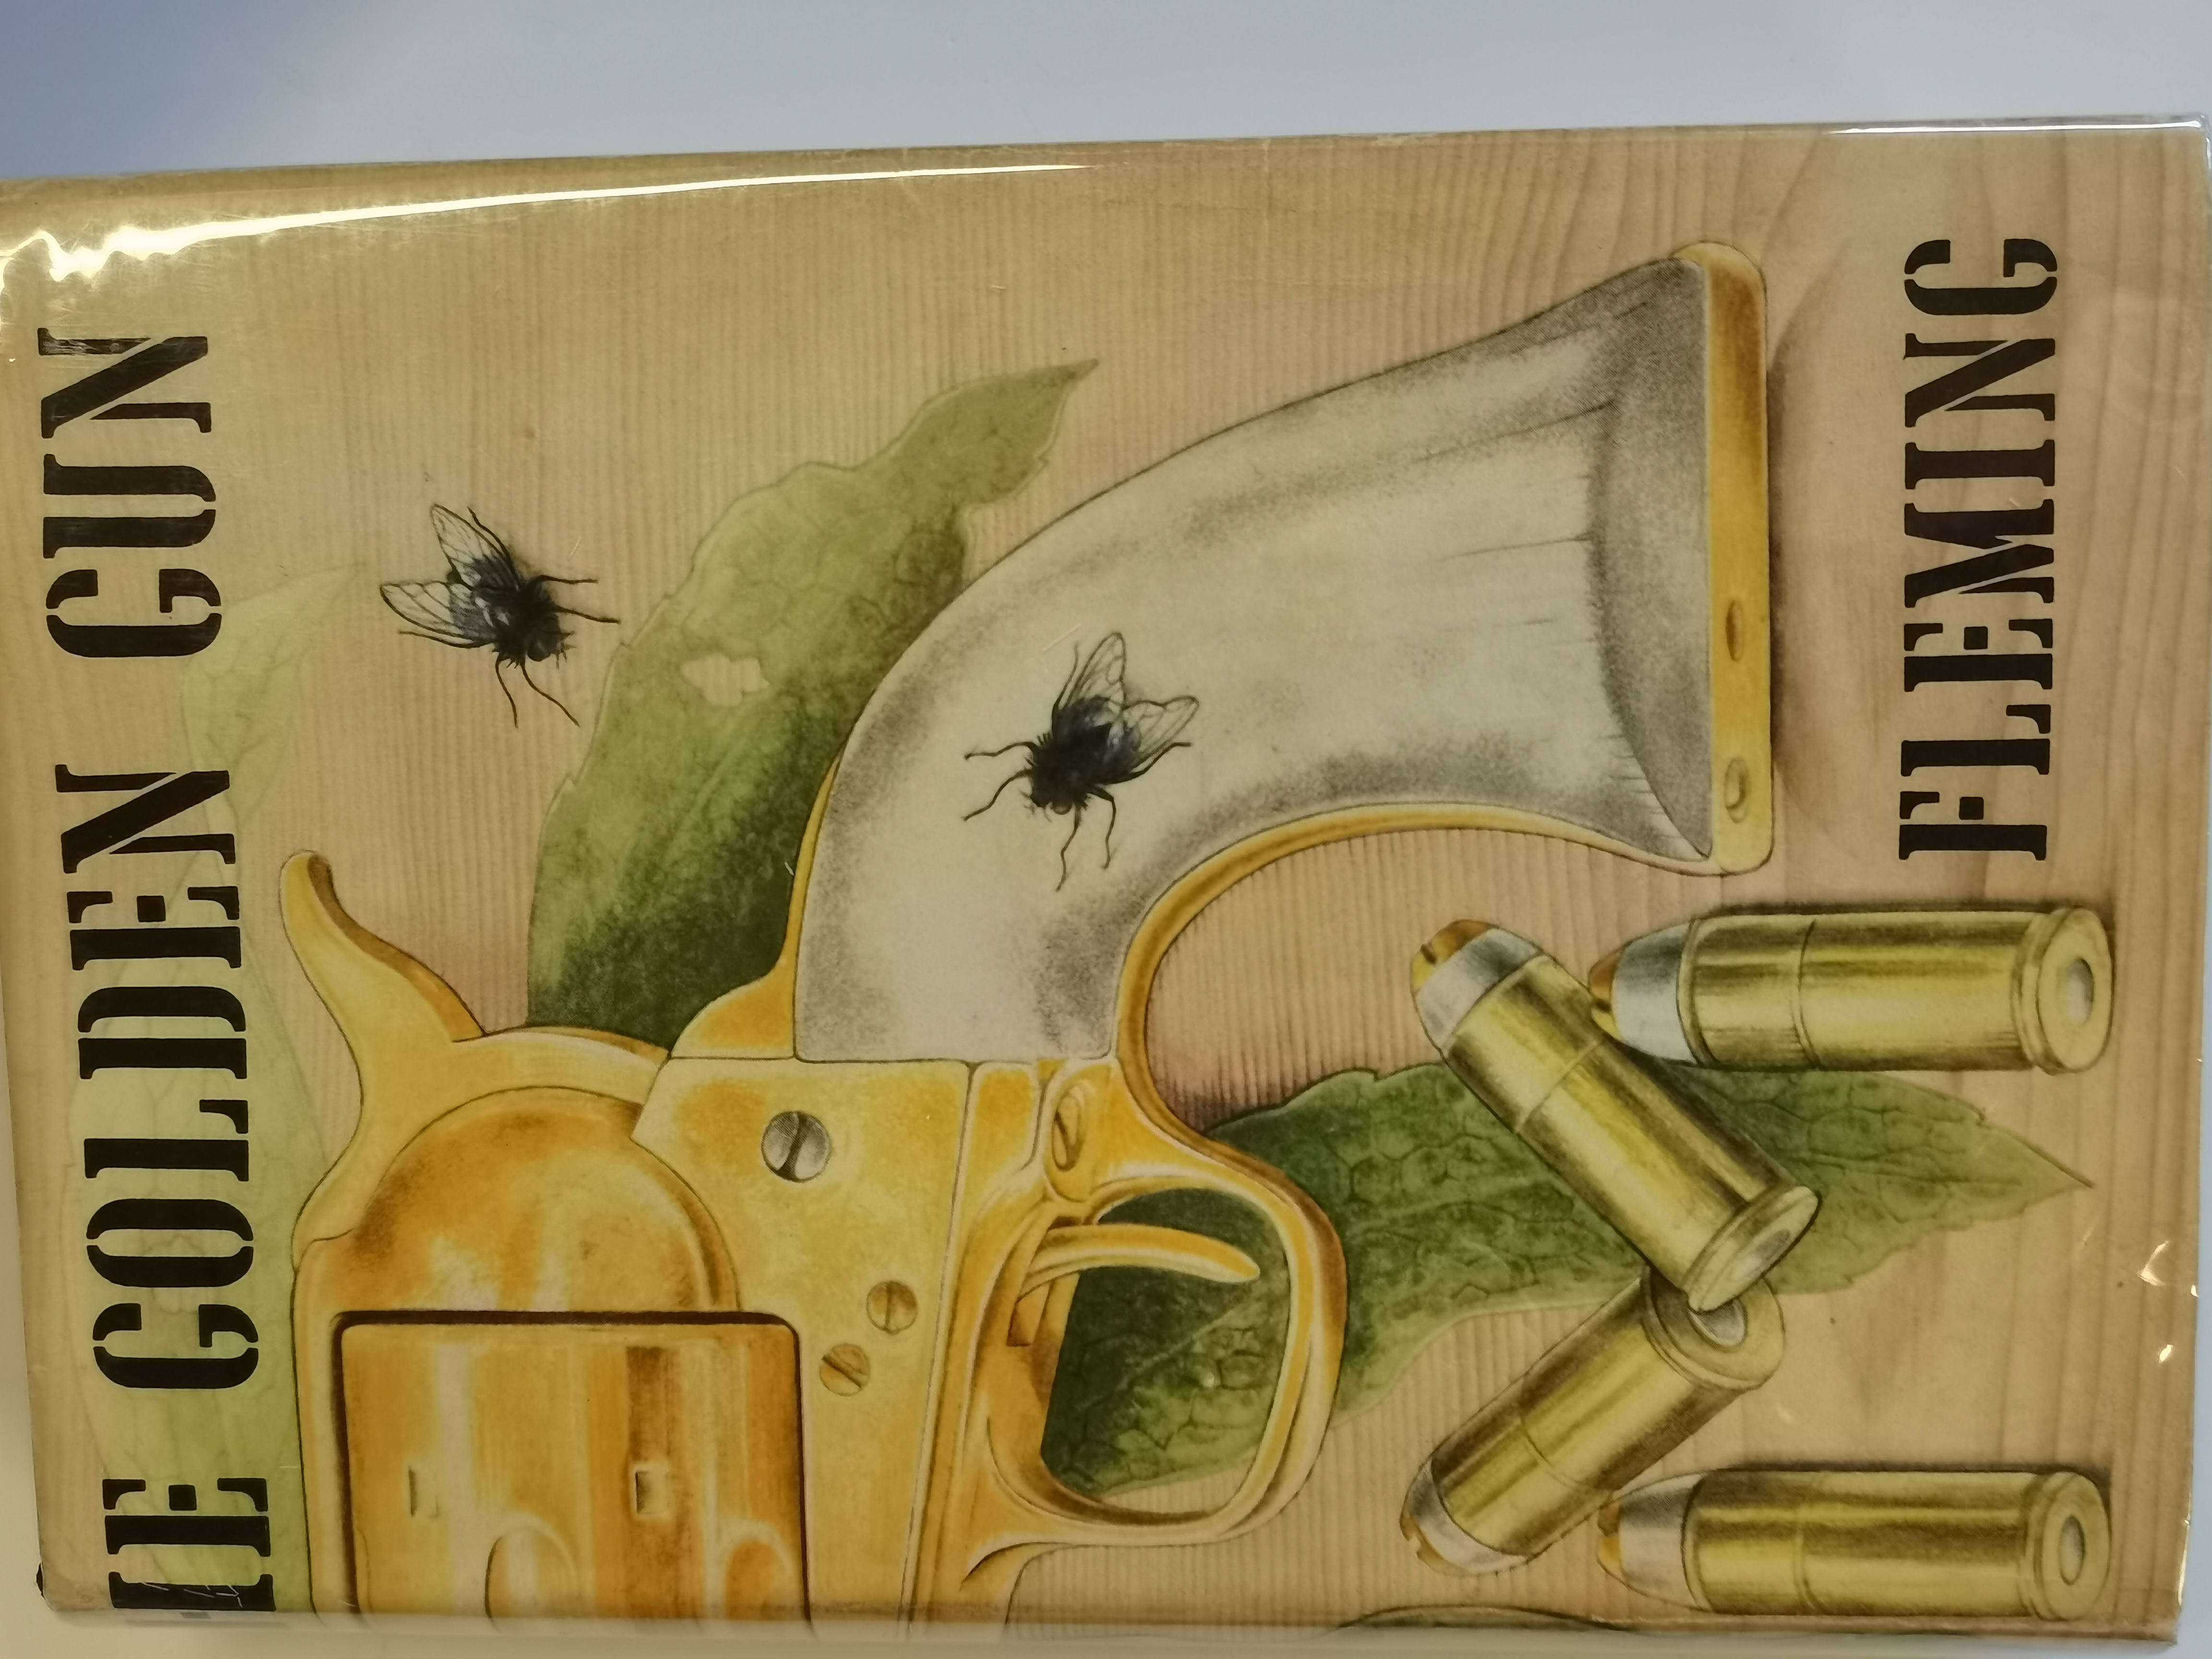 James Bond The Golden Gun - very first edition